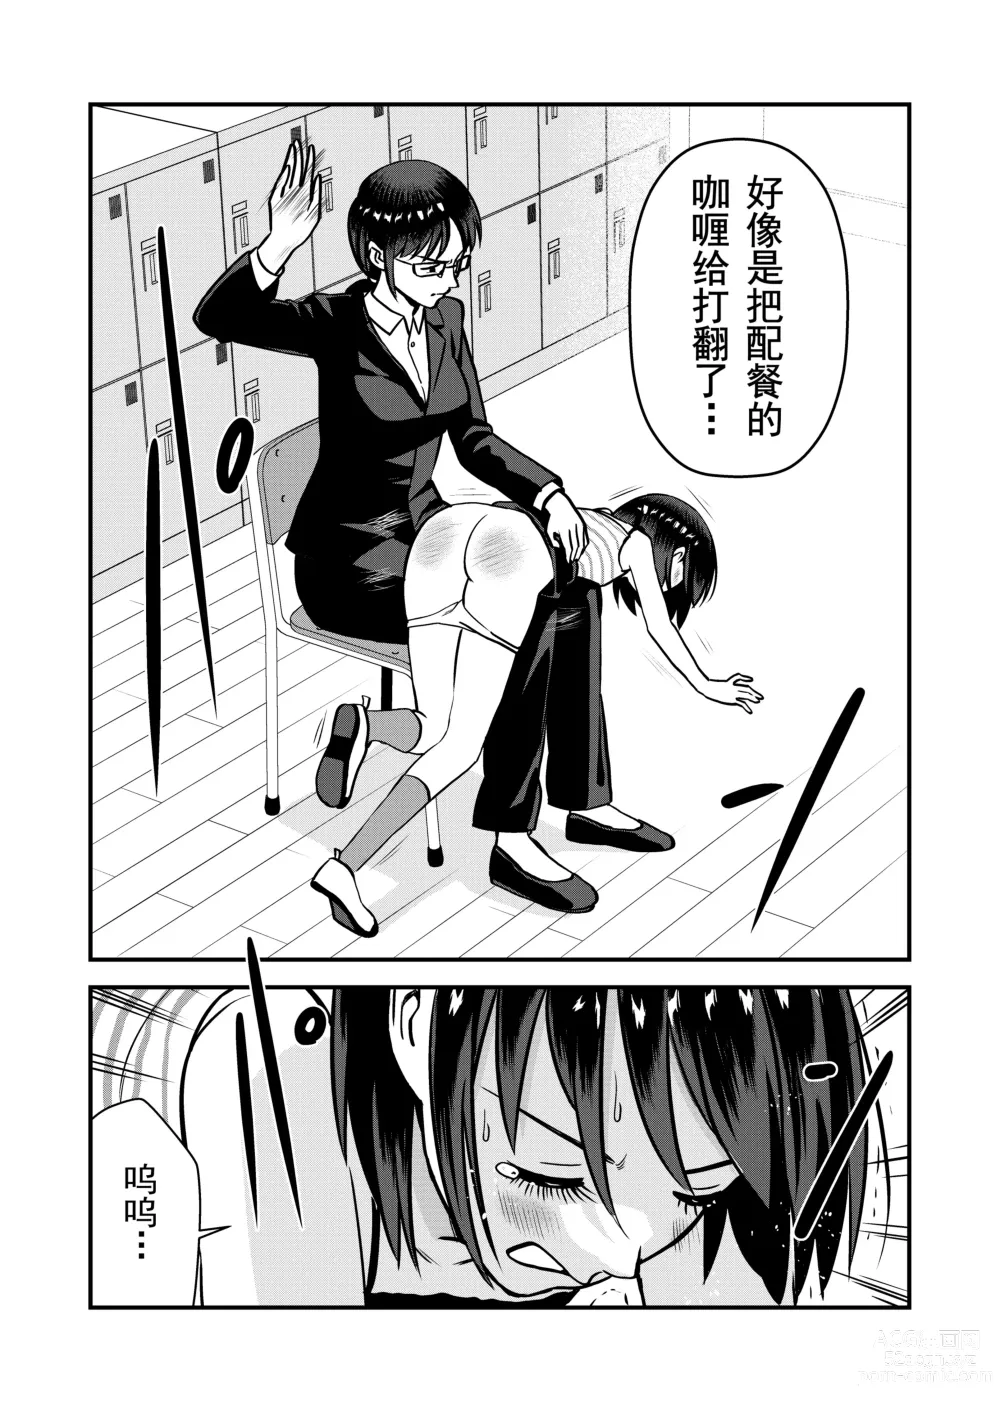 Page 15 of doujinshi 被惩罚后的当天,下半身禁止穿衣服的学校